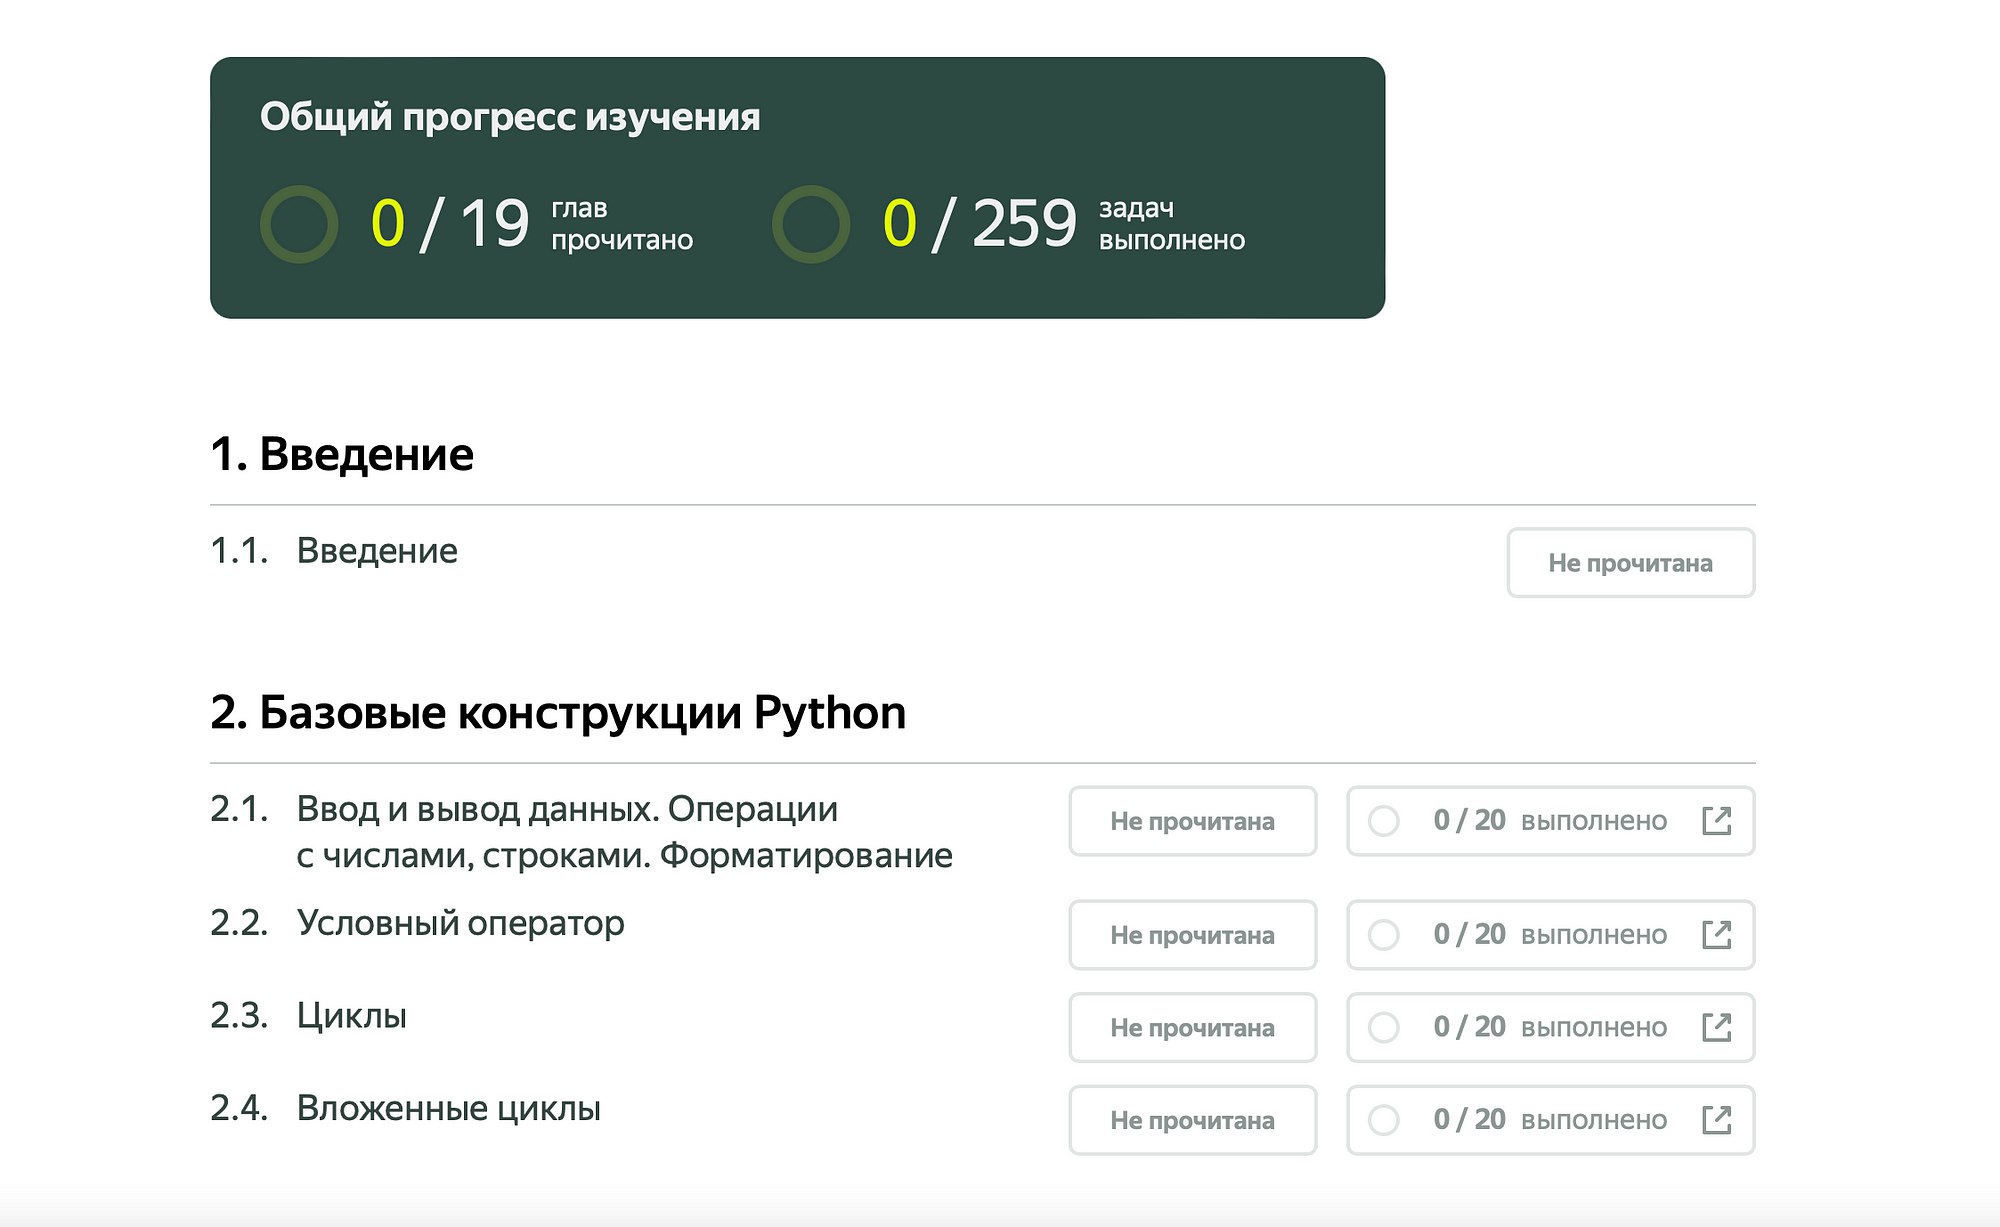 «Яндекс» разработал бесплатные онлайн-учебники по разным областям ИТ